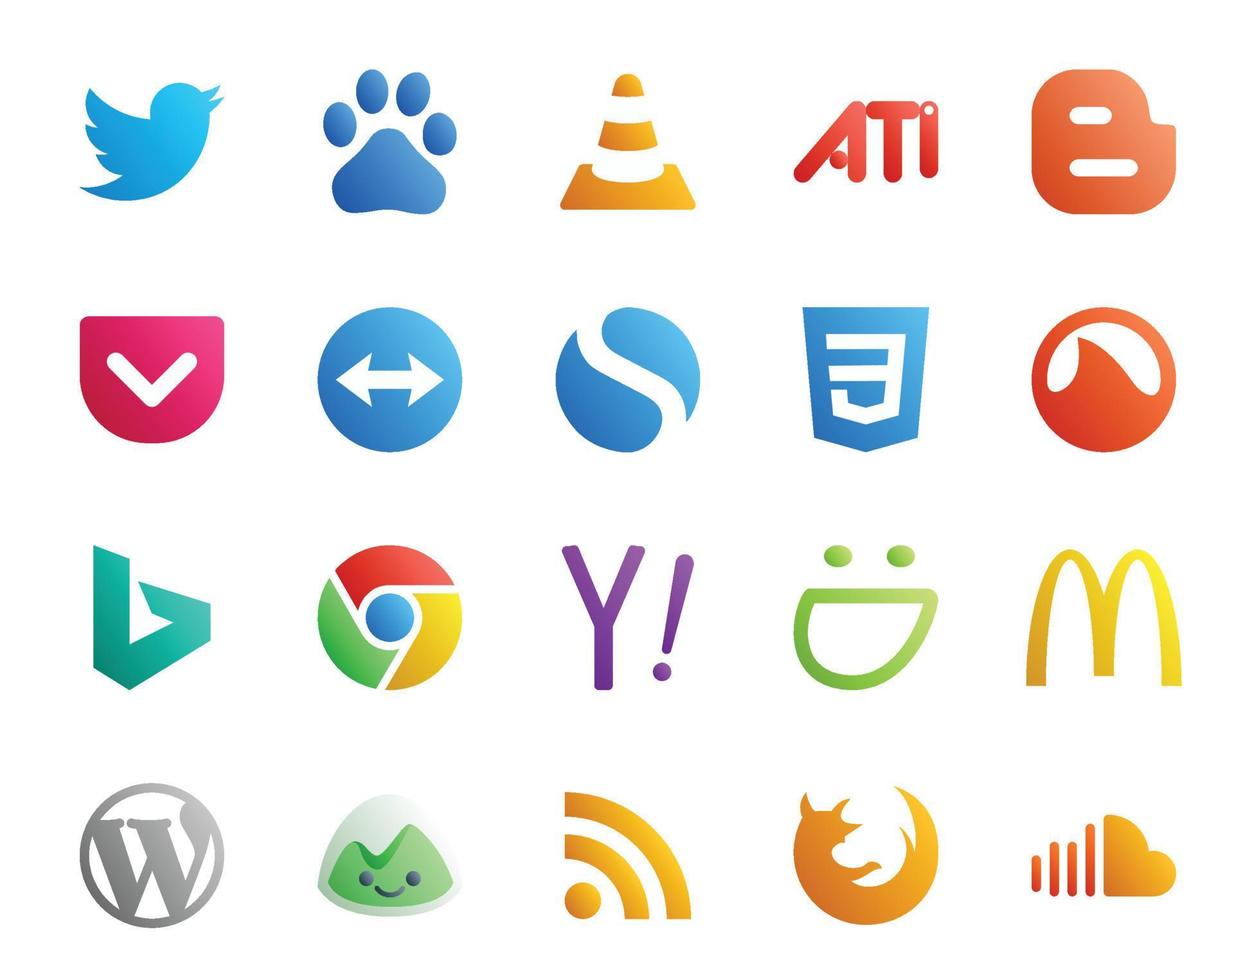 Paquete de 20 íconos de redes sociales, incluido el engreído yahoo pocket chrome grooveshark vector